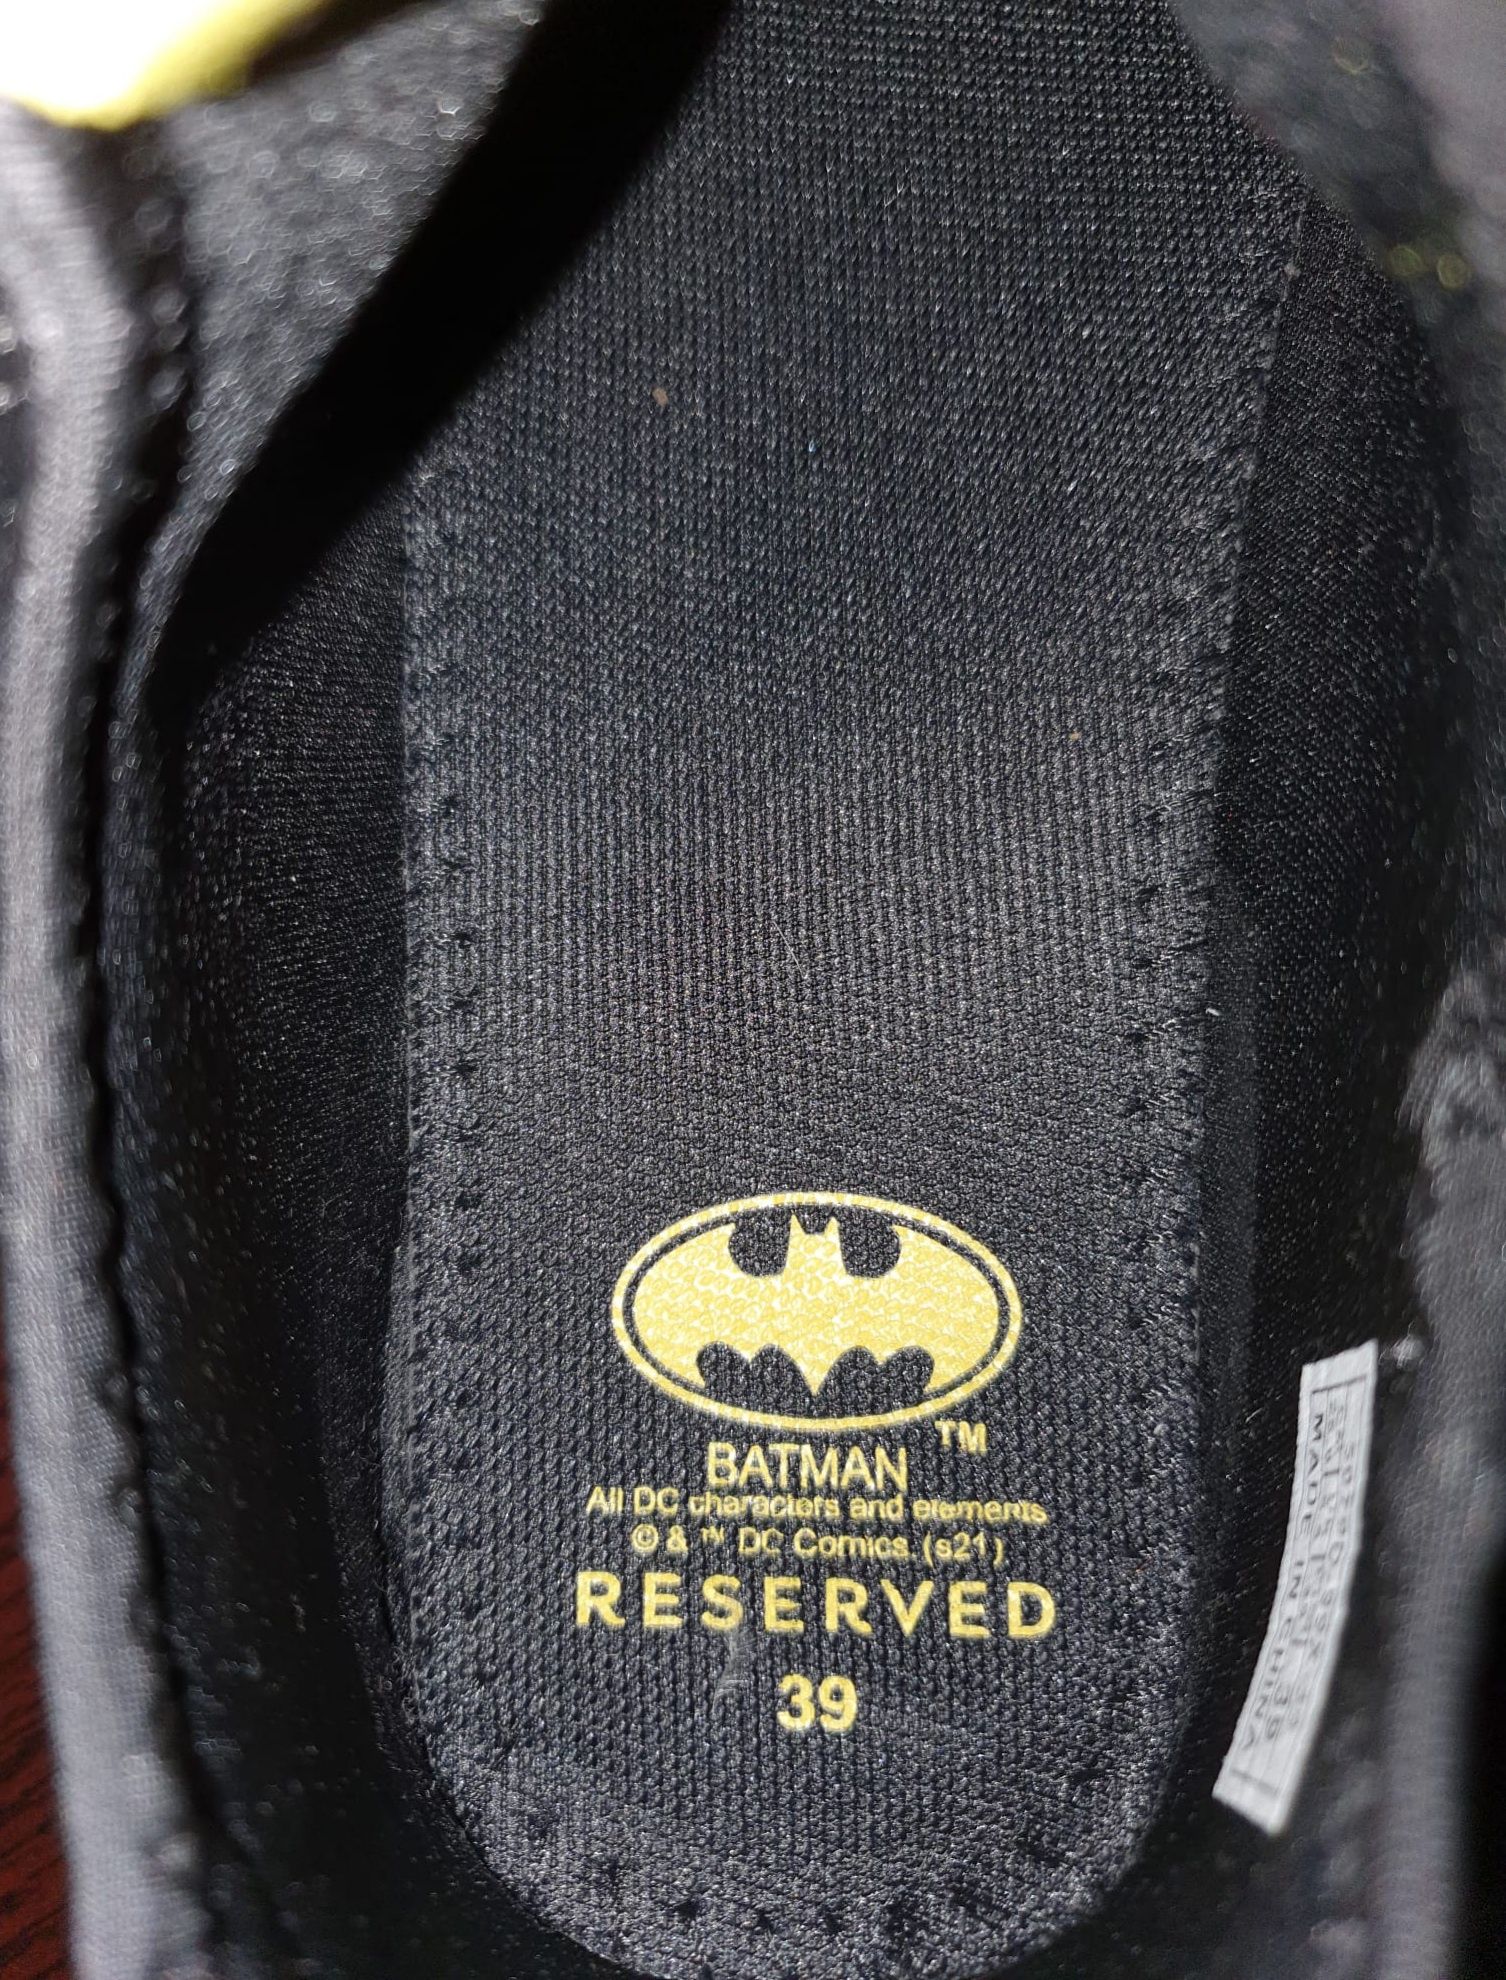 Adidasi Batman de la Reserved